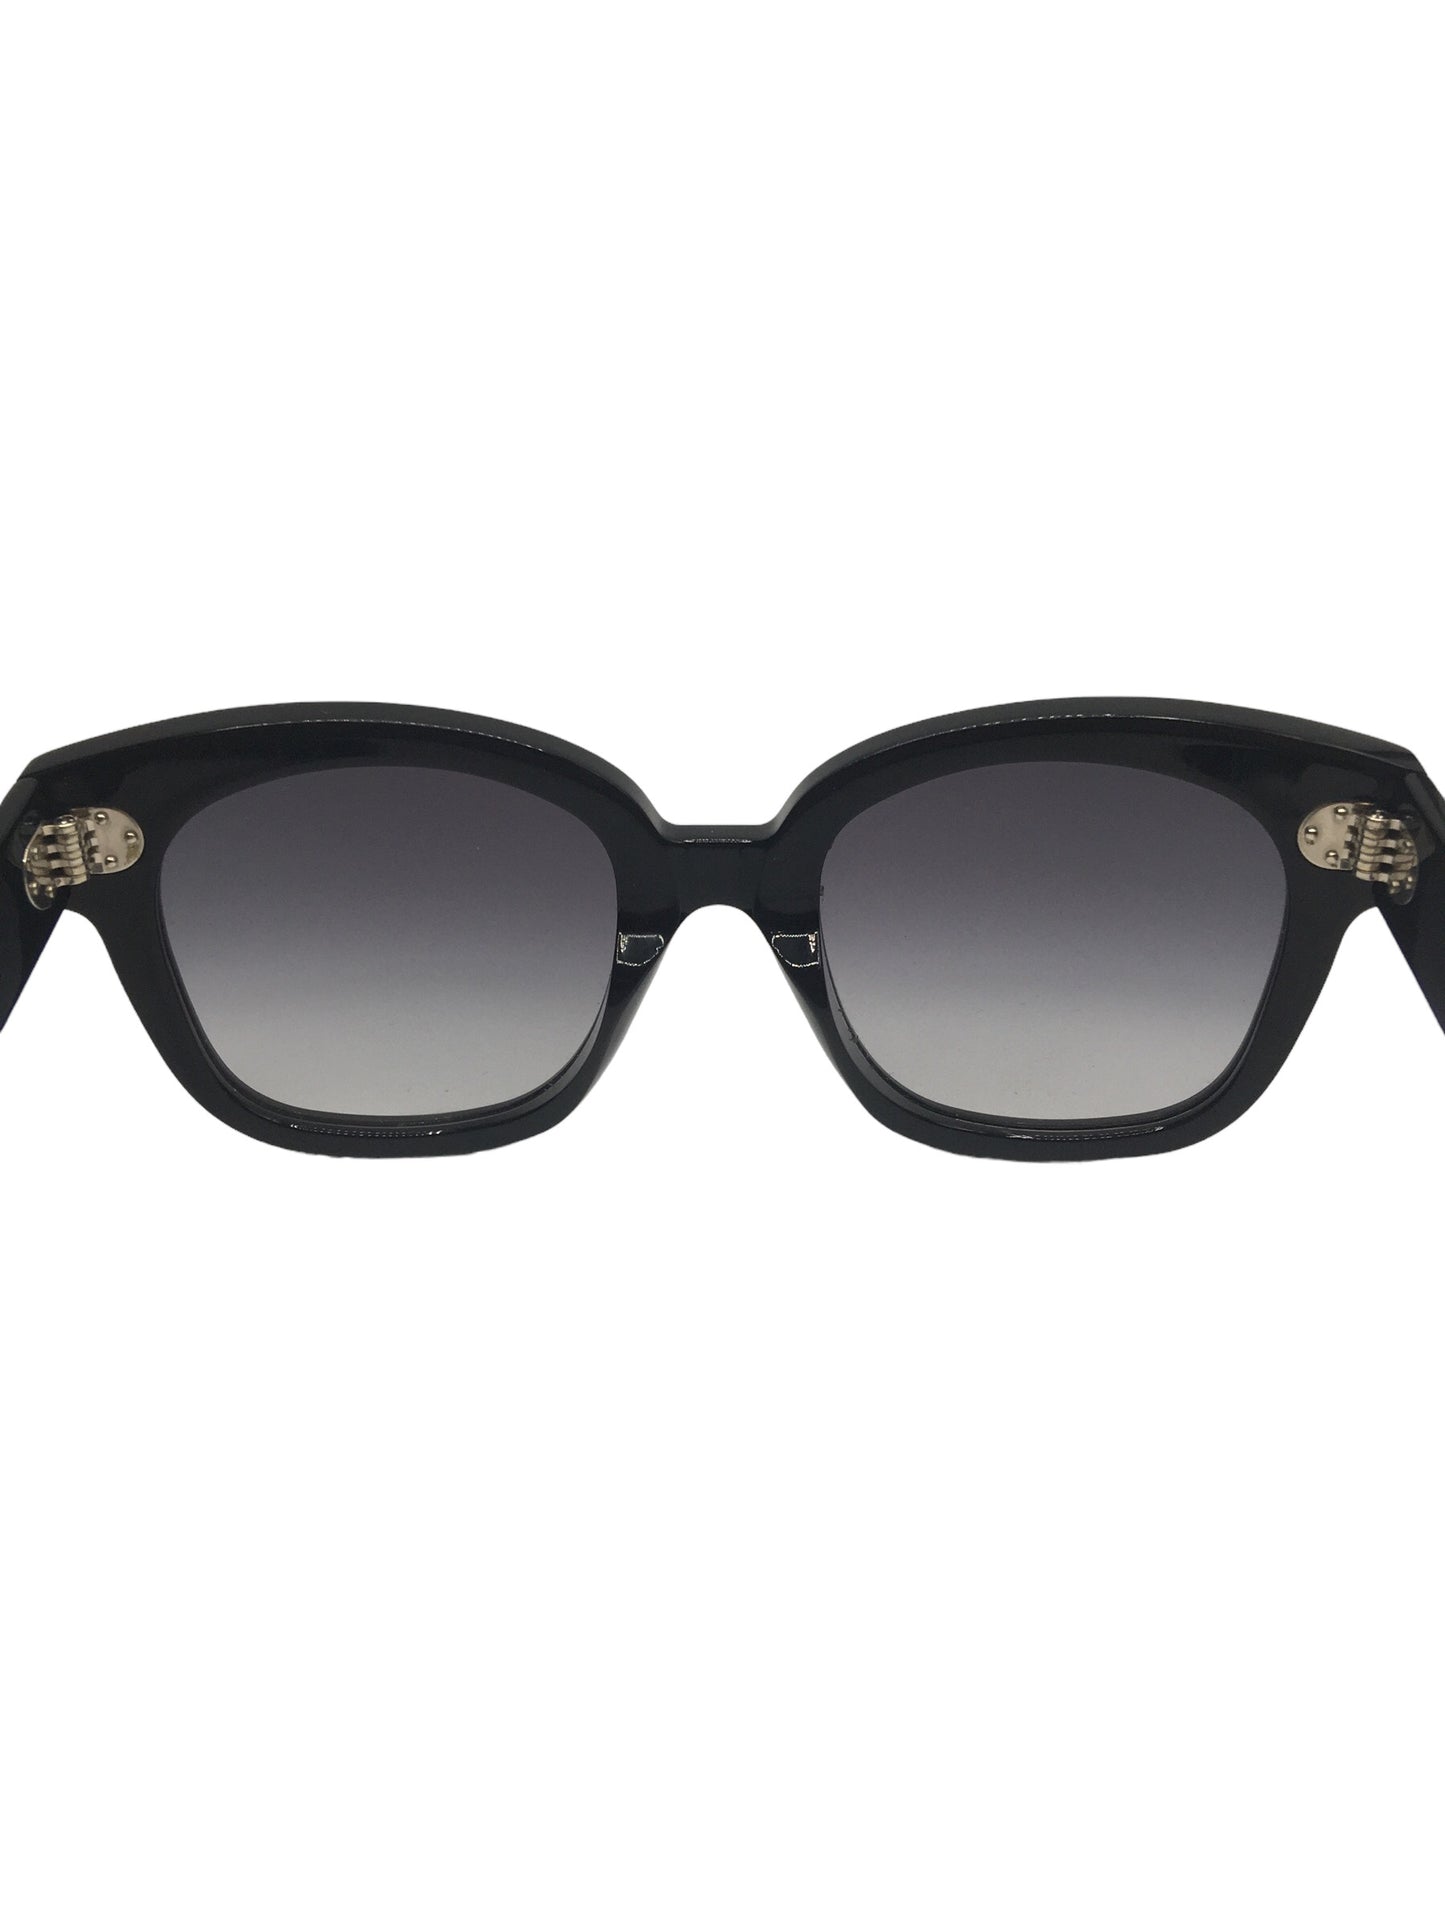 Designer Women's Square Sunglasses